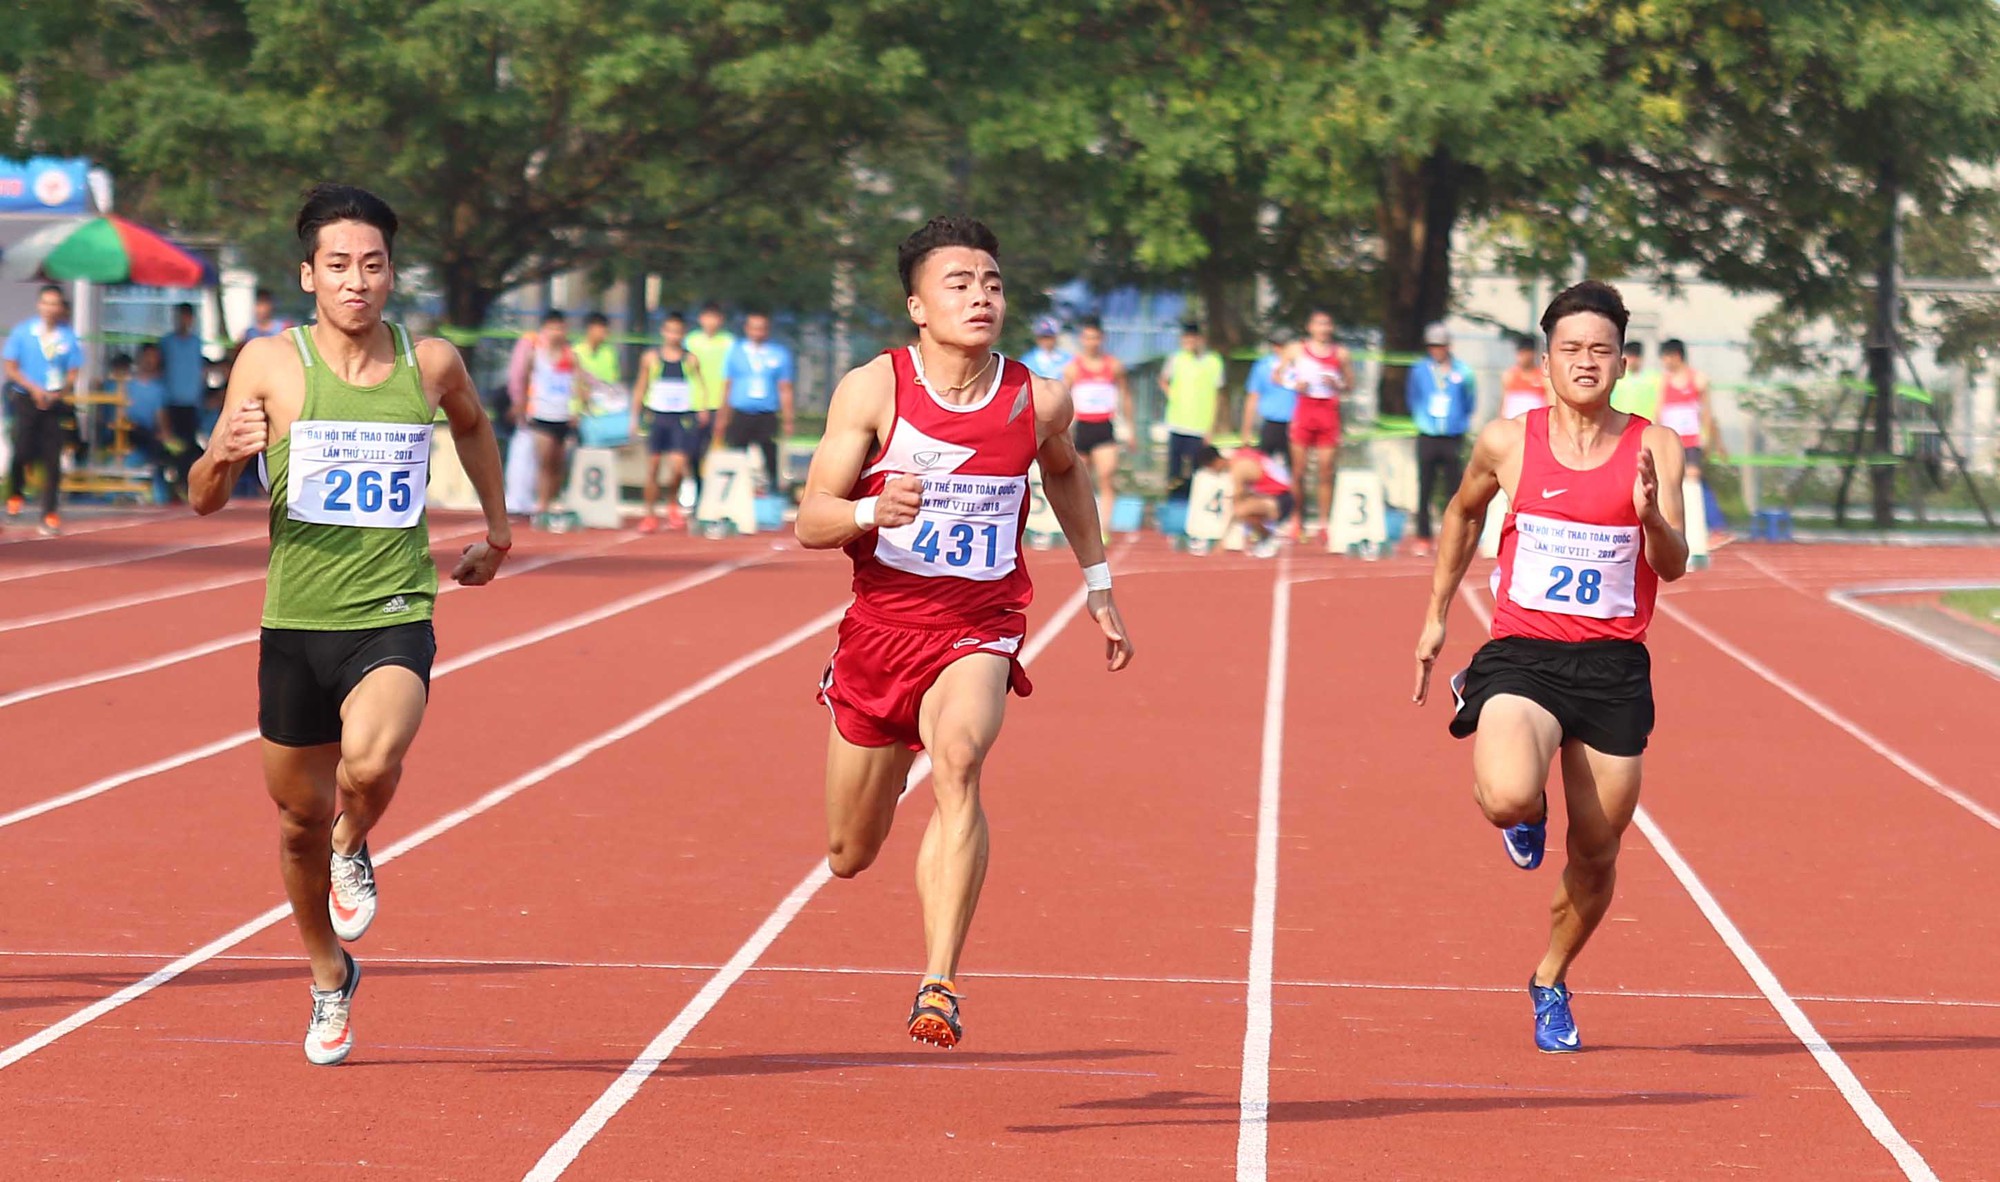 Lê Tú Chinh phá kỷ lục cự ly 100m tại Đại hội TDTT toàn quốc 2018 - Ảnh 2.